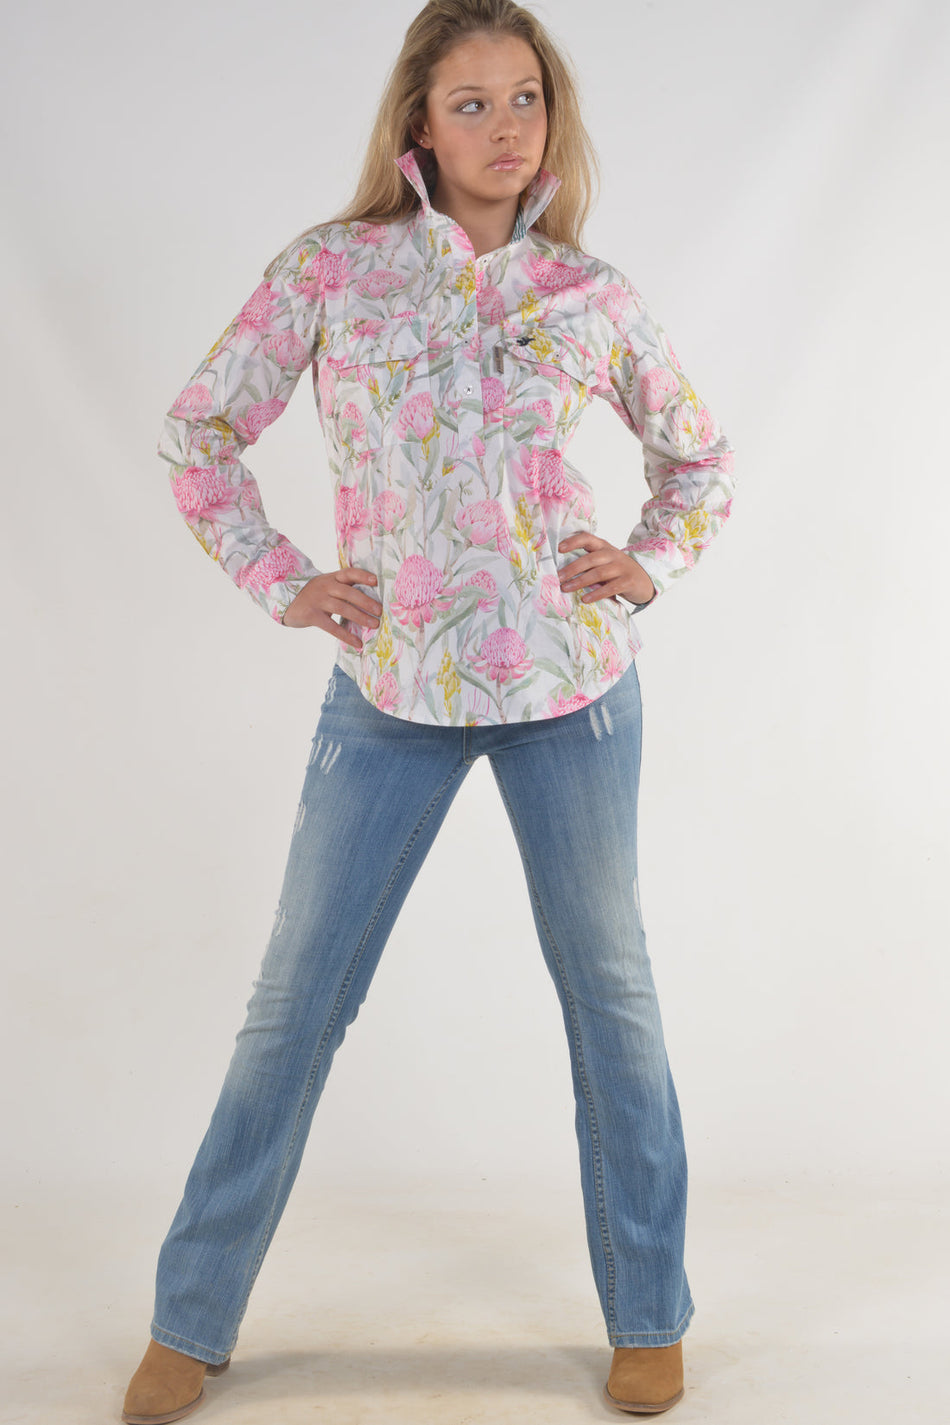 Bullrush - Ladies Protea Shirt